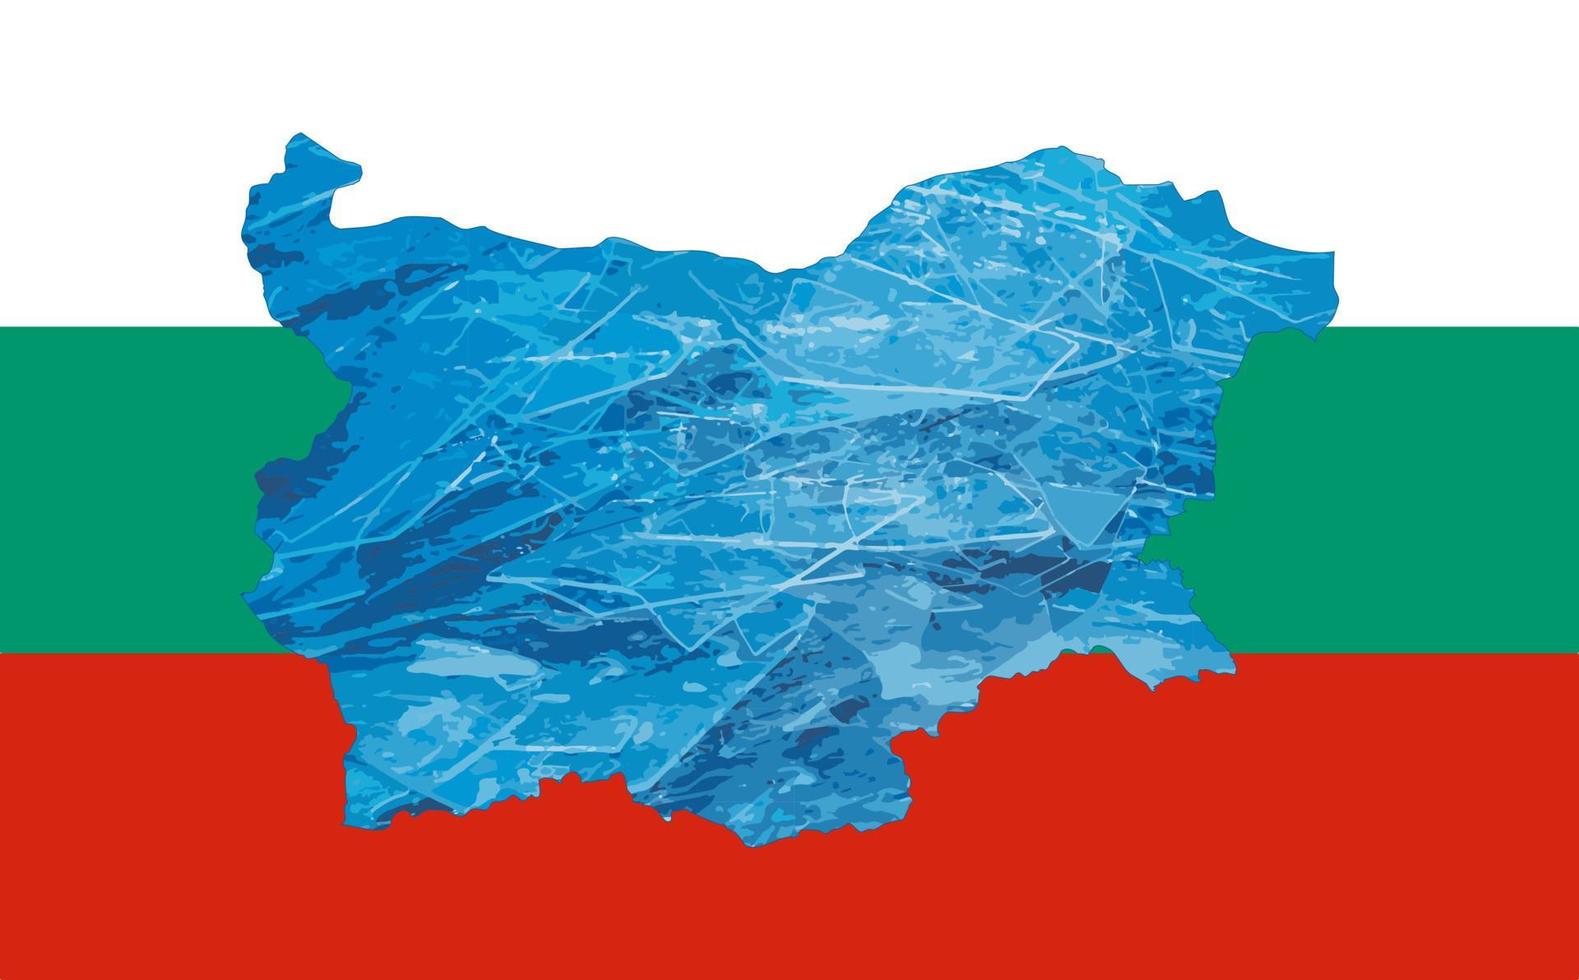 schema carta geografica di Bulgaria con il Immagine di il nazionale bandiera. ghiaccio dentro il carta geografica. vettore illustrazione. energia crisi.